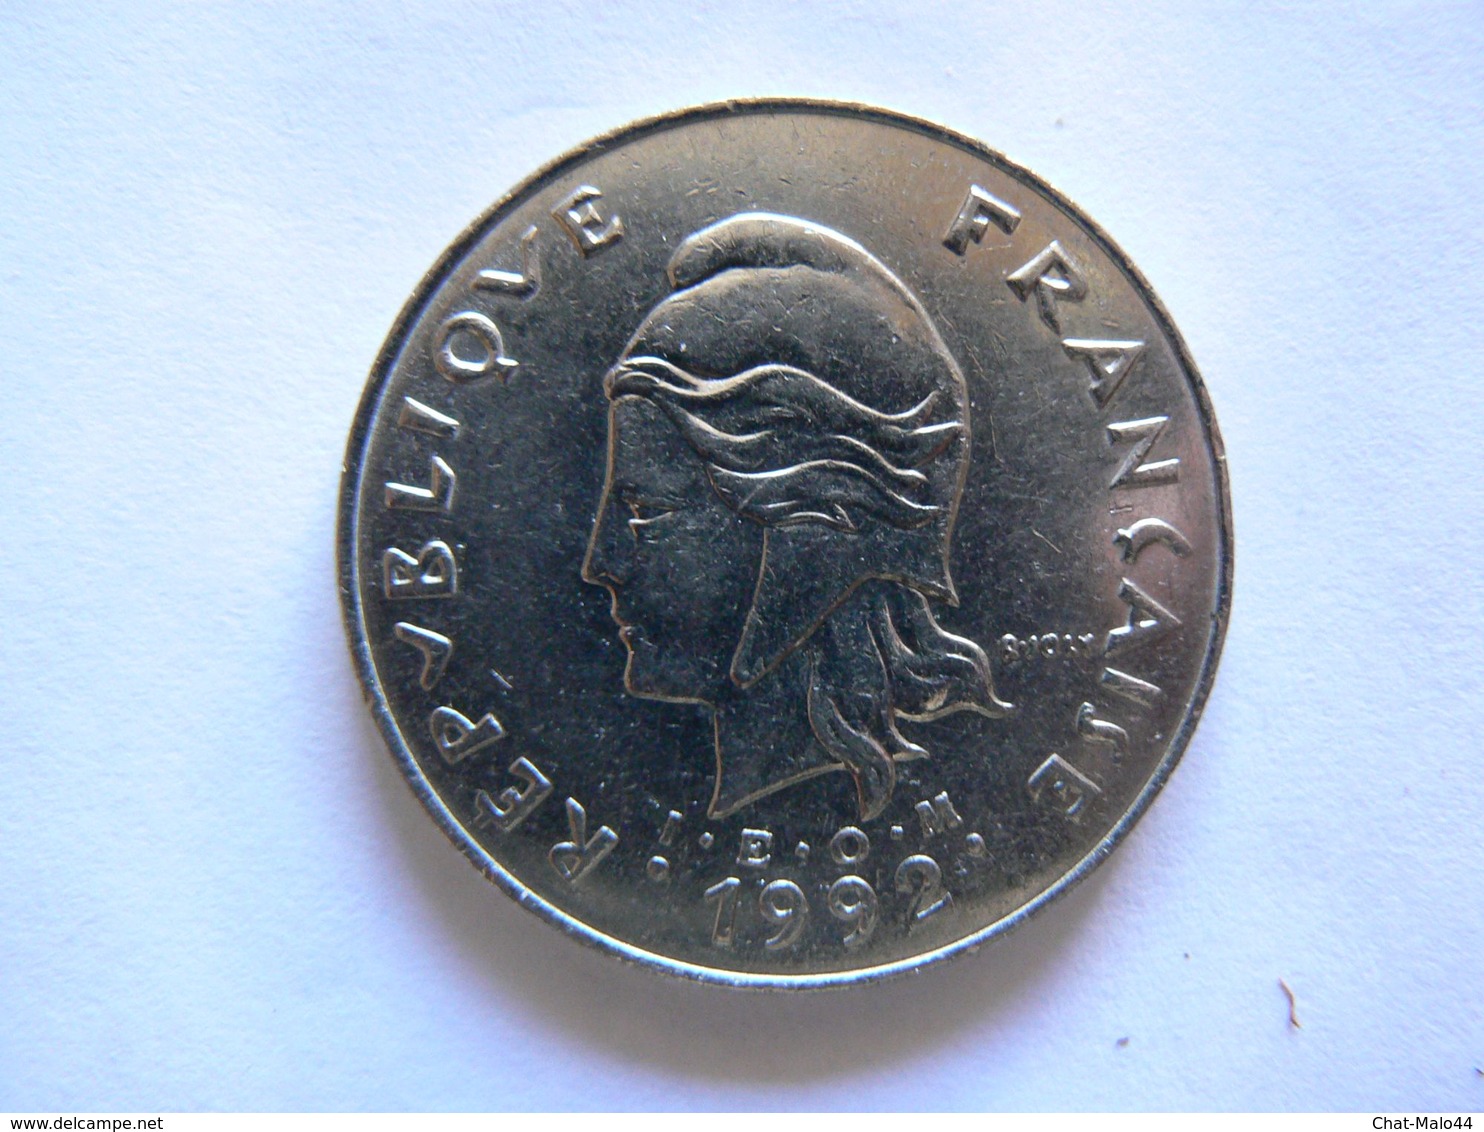 Nouvelle-Calédonie - Monnaie De 50 Frs En Nickel. Année 1992 - Nouvelle-Calédonie